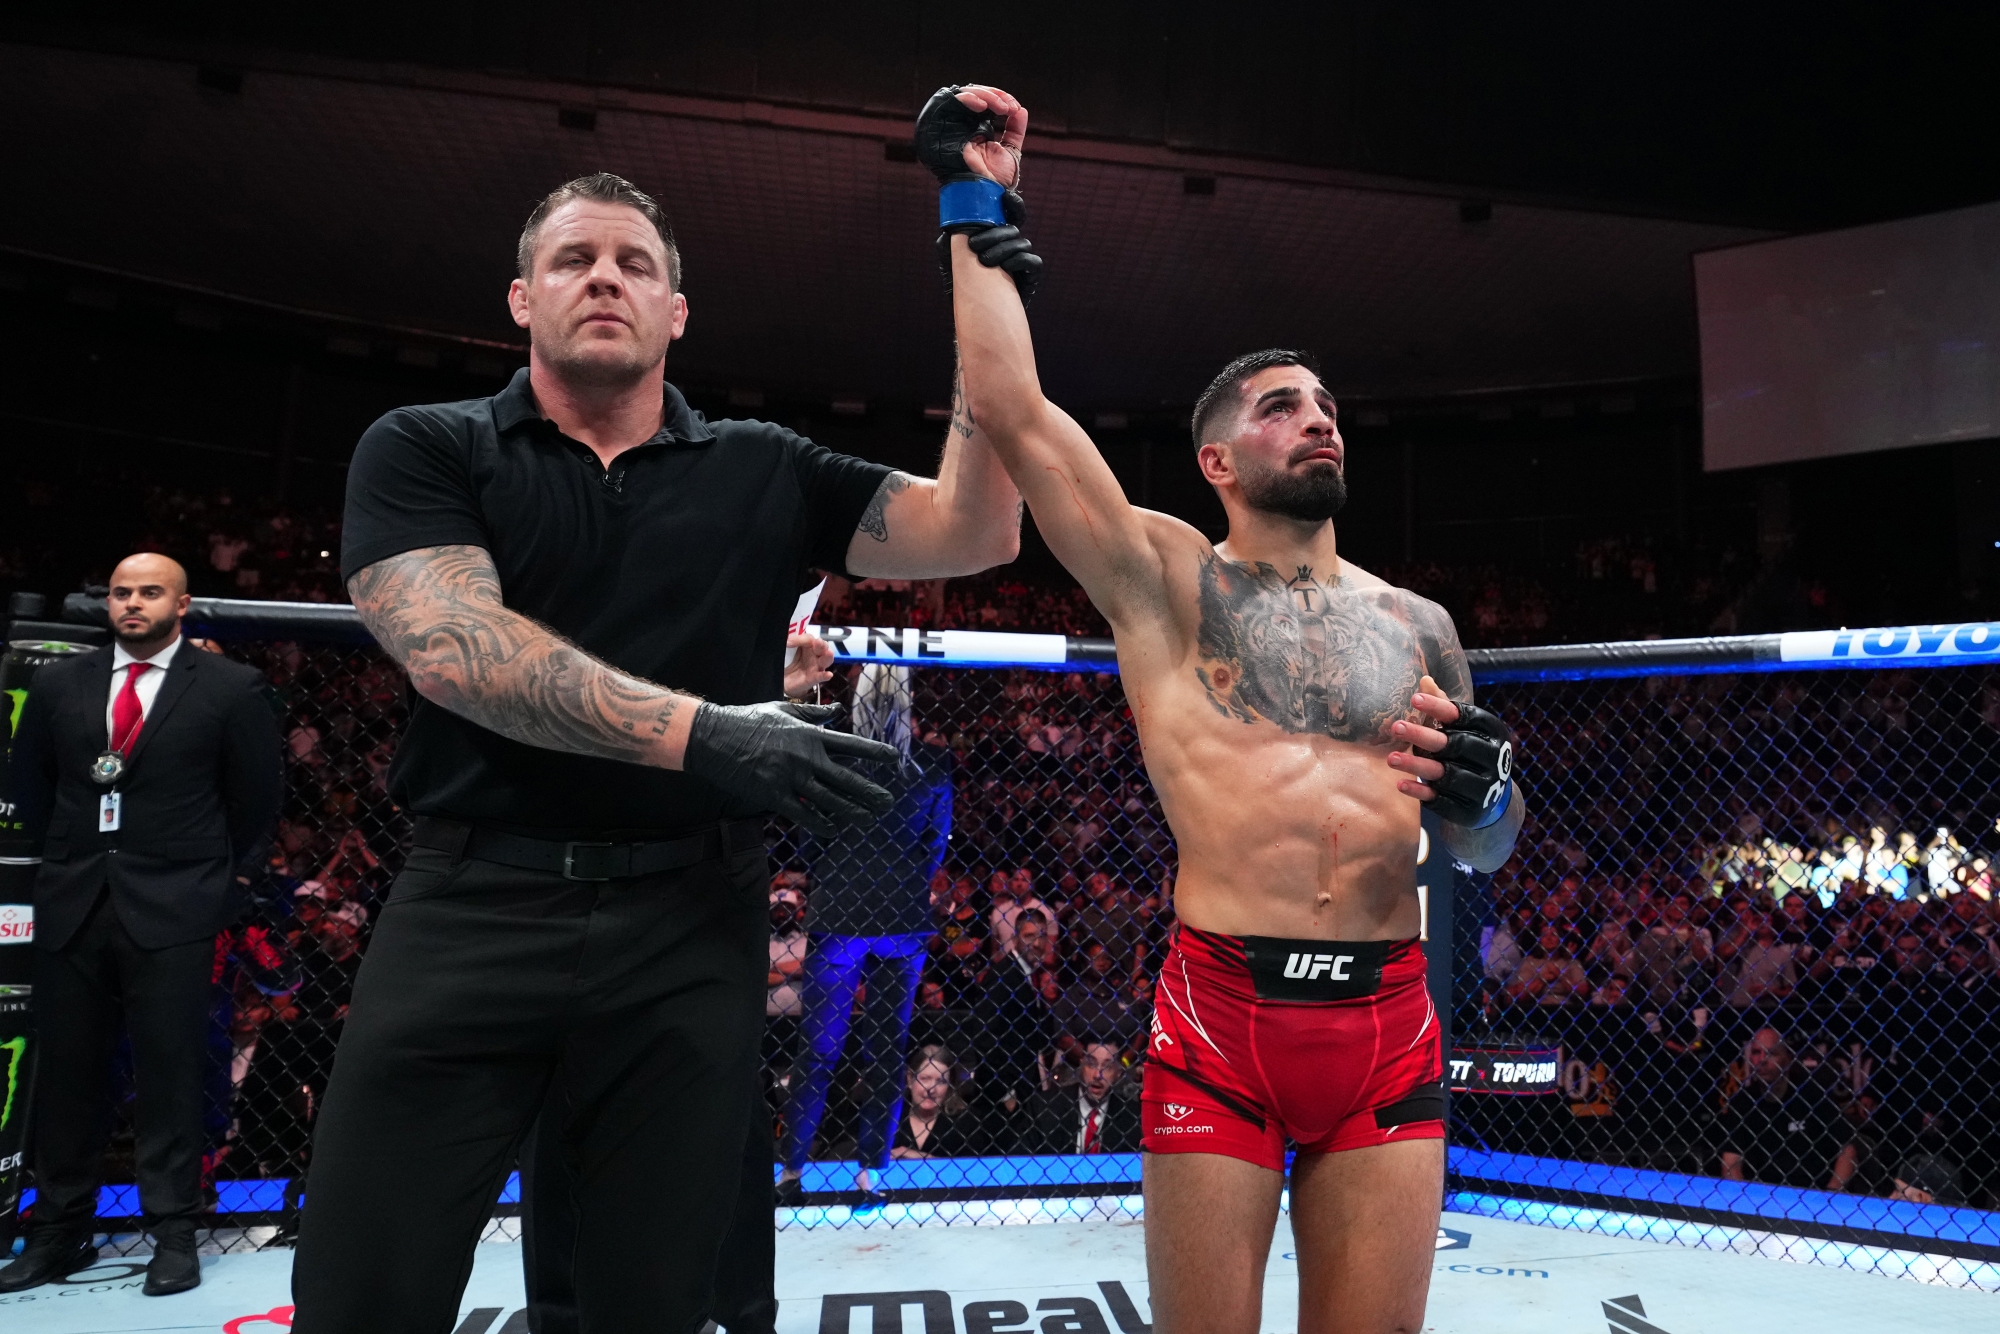 Alcaraz mellett Ilia Topuria örülhetett még igazán a wimbledoni döntő eredményének, aki a spanyol (és a grúz) színeket az UFC-ben képviseli. (Fotó: Josh Hedges/Zuffa LLC/Getty Images)